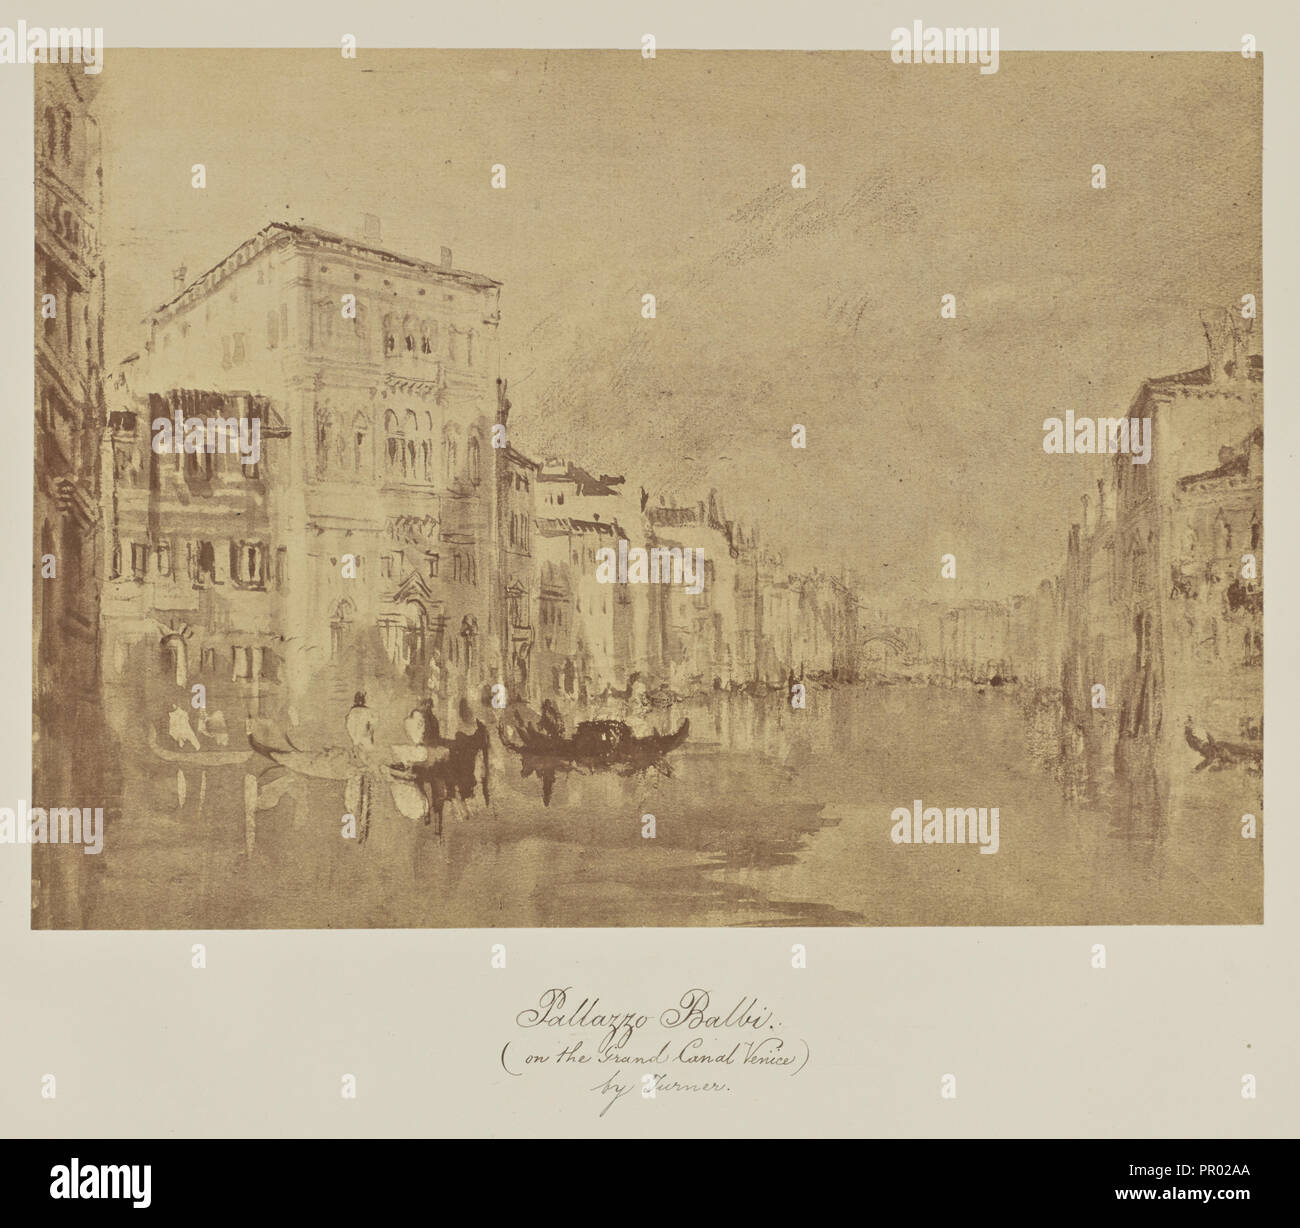 Pallazzo Balbi., sur le Grand Canal, Venise par Turner ; Caroline Bertolacci, britannique, né en 1825, Actif 1860 - 1890, vers 1863 Banque D'Images